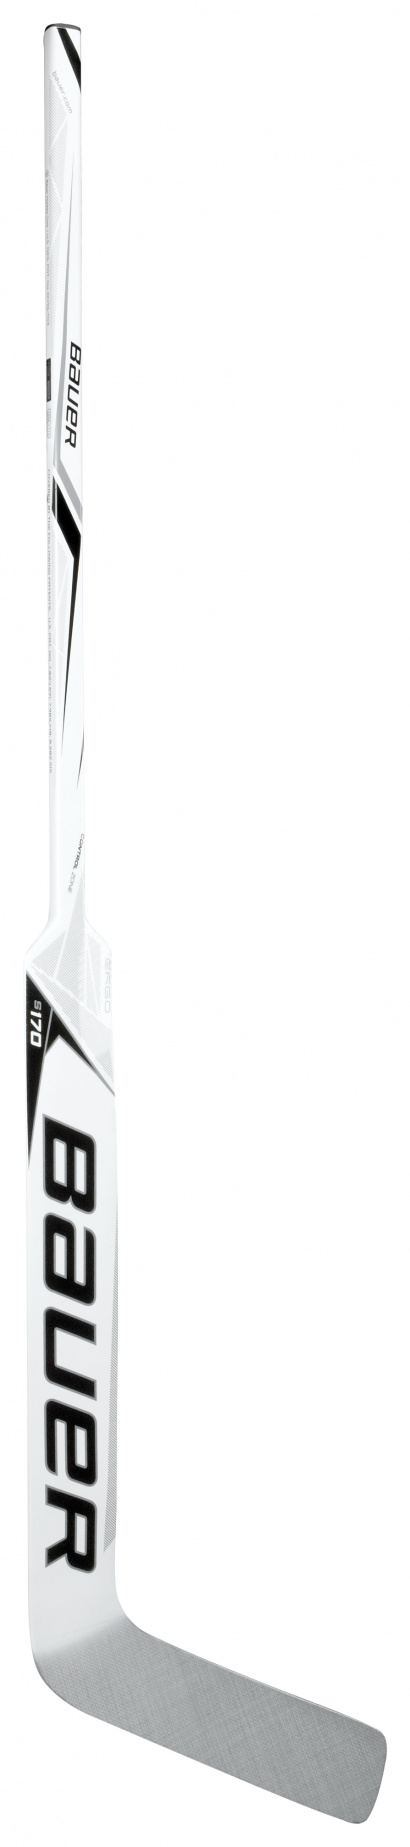 Goalie Stick Bauer Supreme S170 Comp Int P31/RHT - BLK